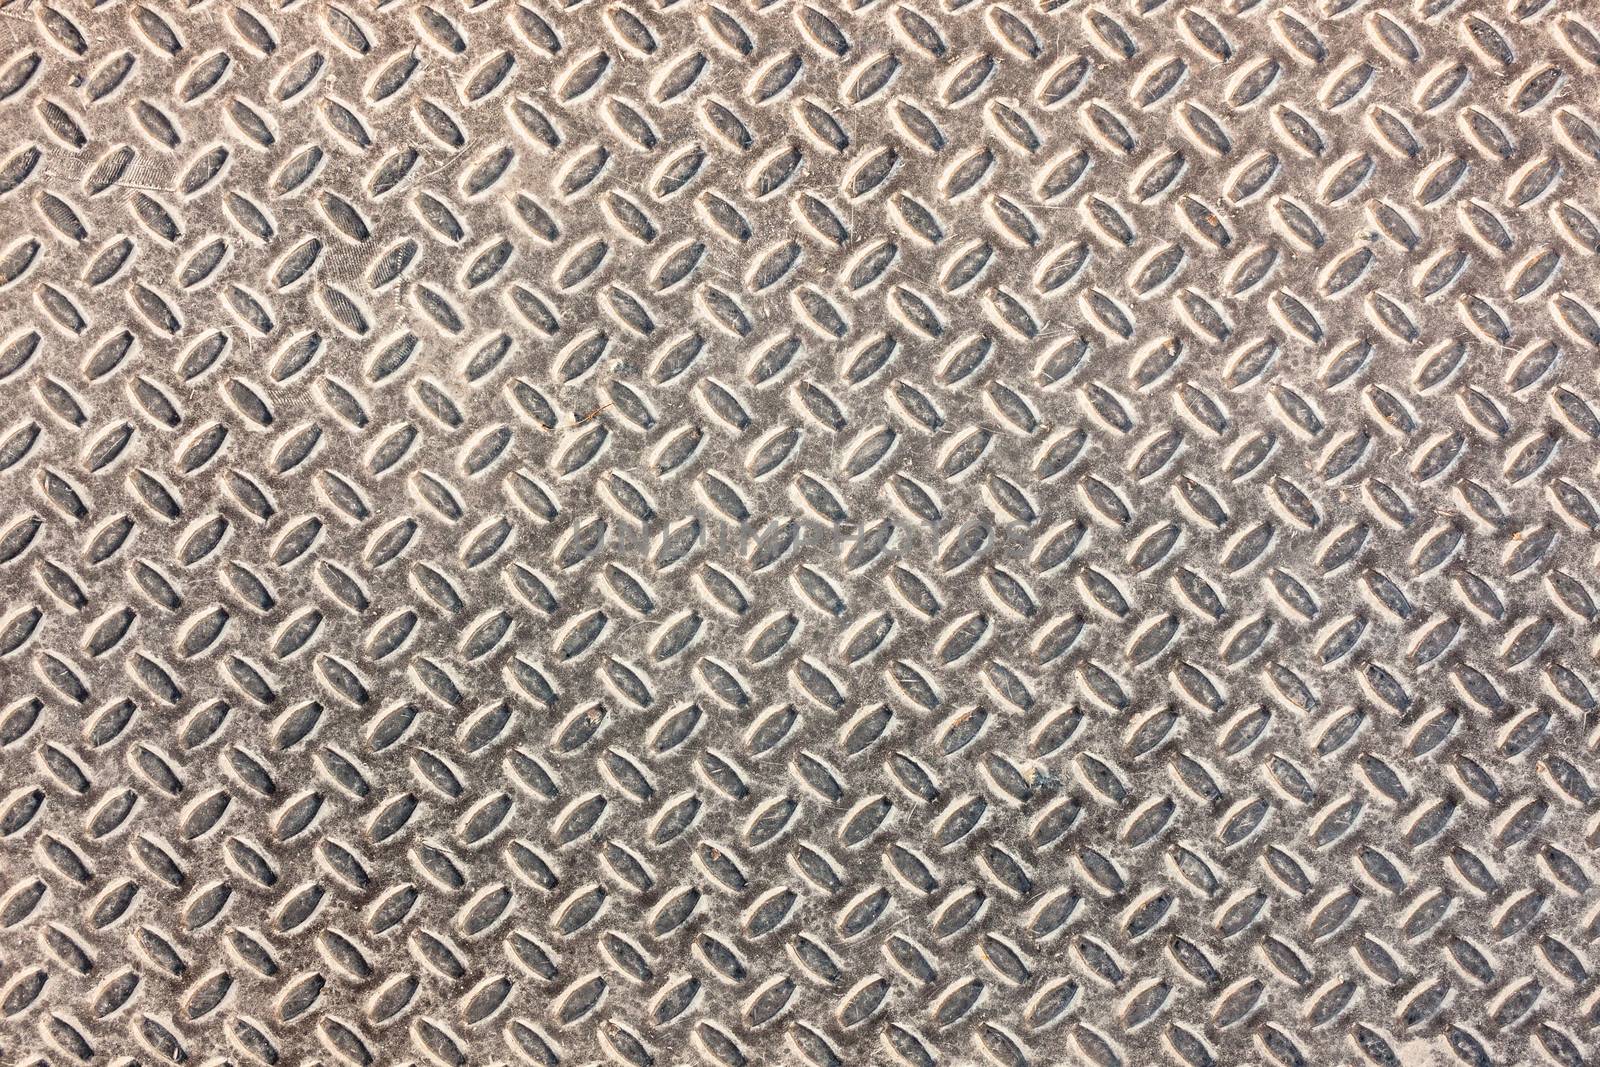 Dirty industrial grip floor texture pattern